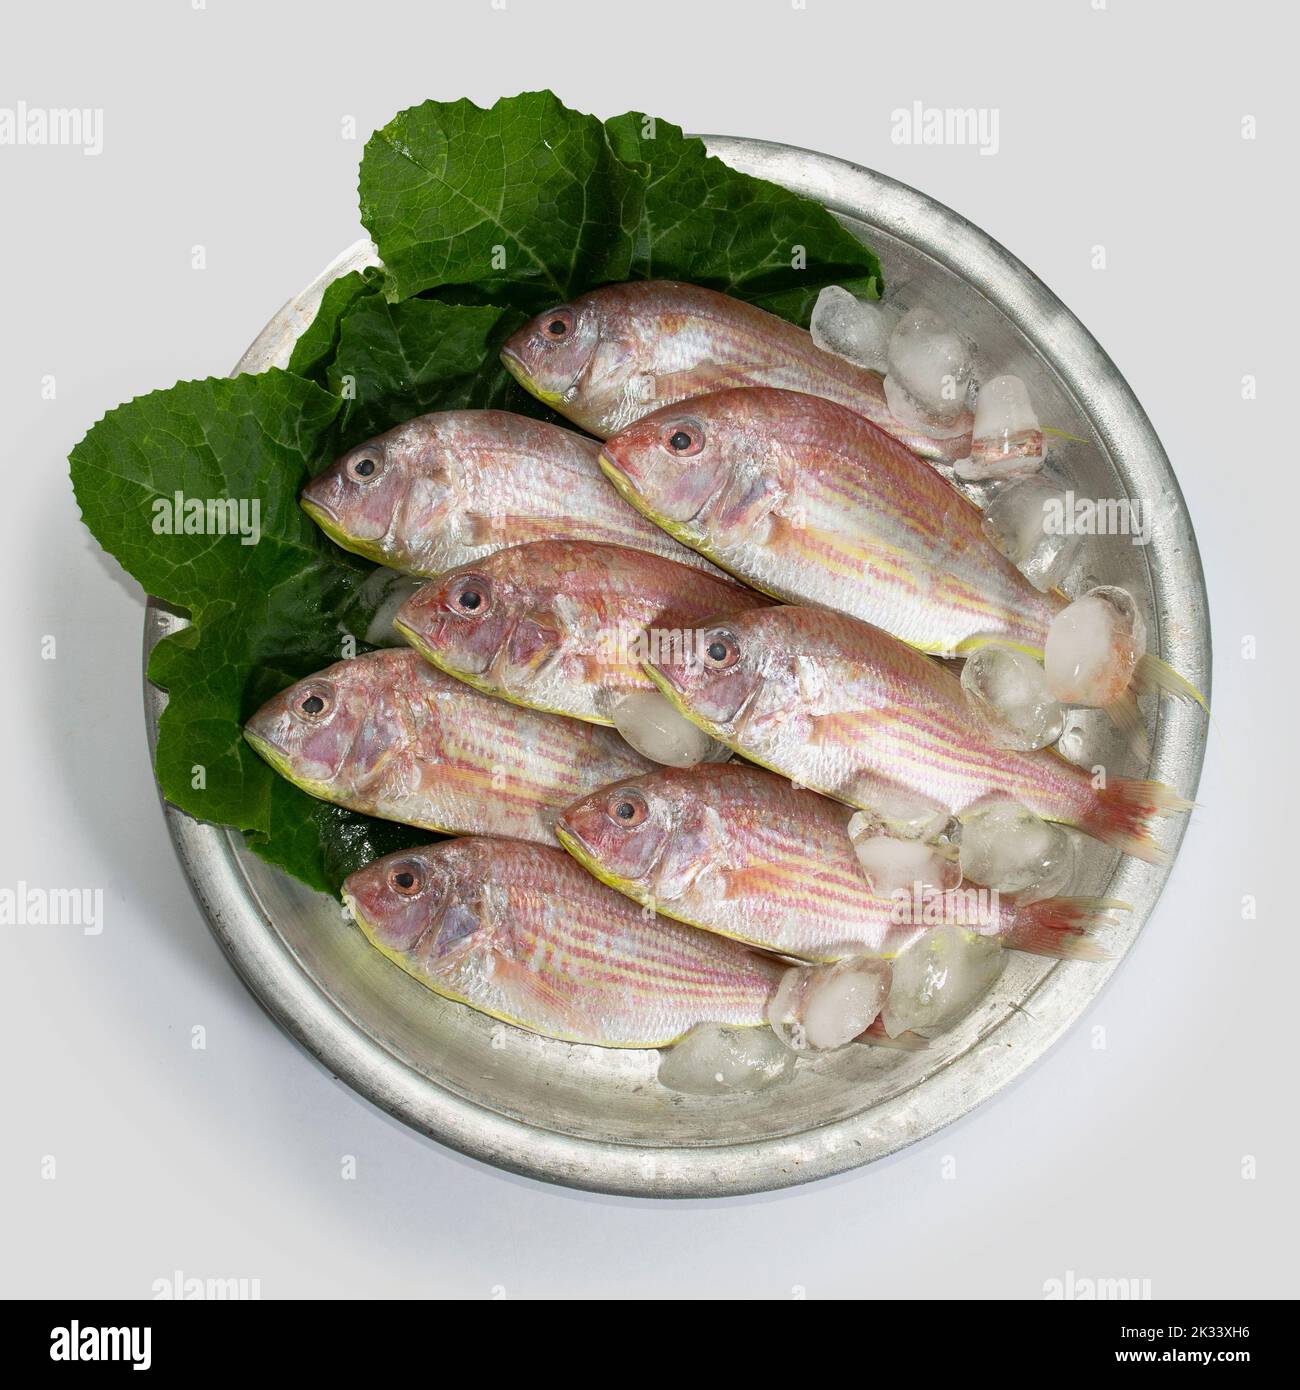 Roter Croaker, Lal poa, Pama, POA Fisch auf Aluminiumschale mit Kürbisblättern. Meeresfrüchte. Stockfoto